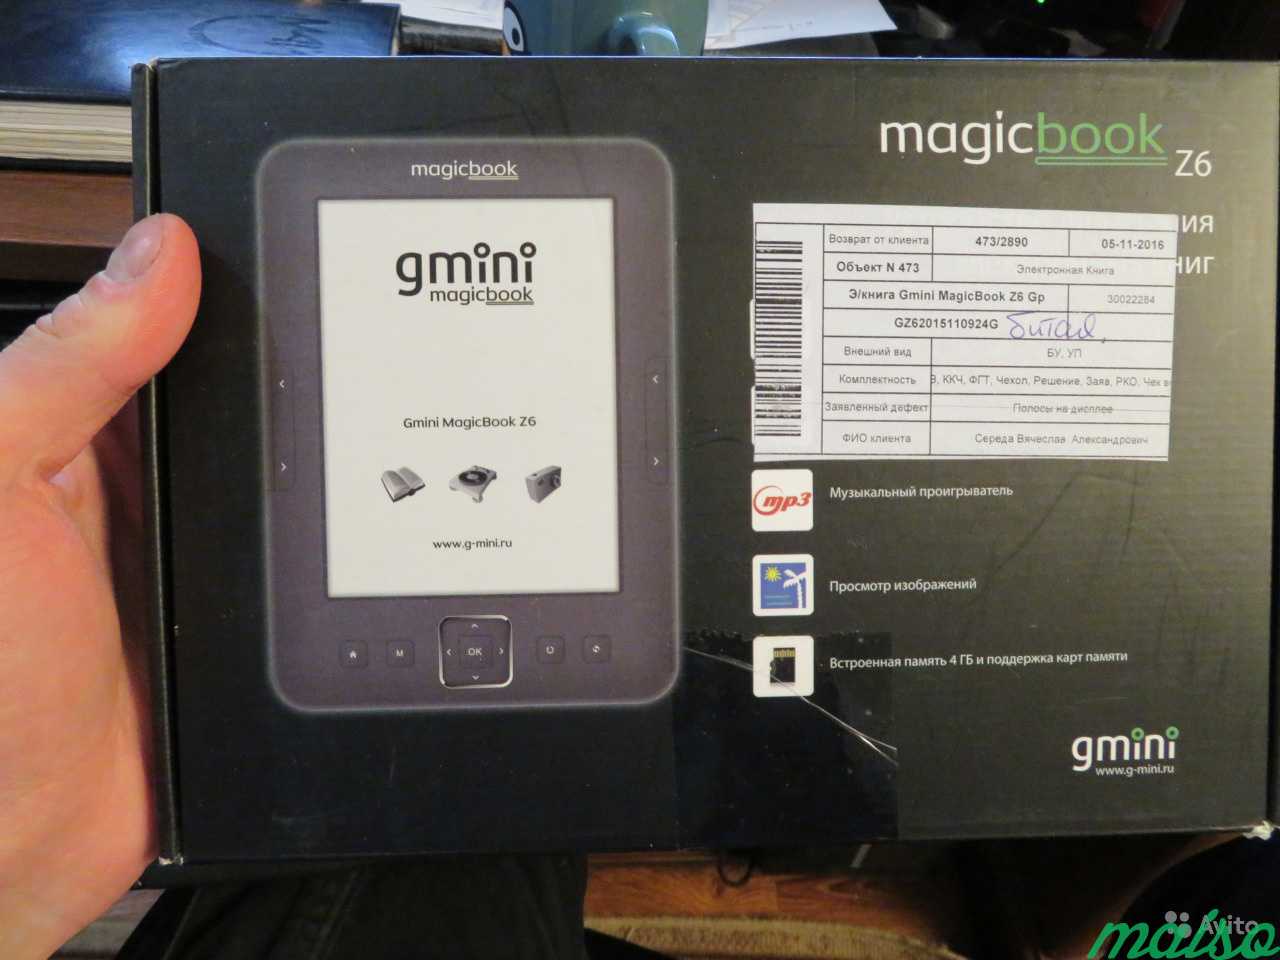 Gmini MagicBook Z6 электронная книга разбита в Санкт-Петербурге. Фото 1